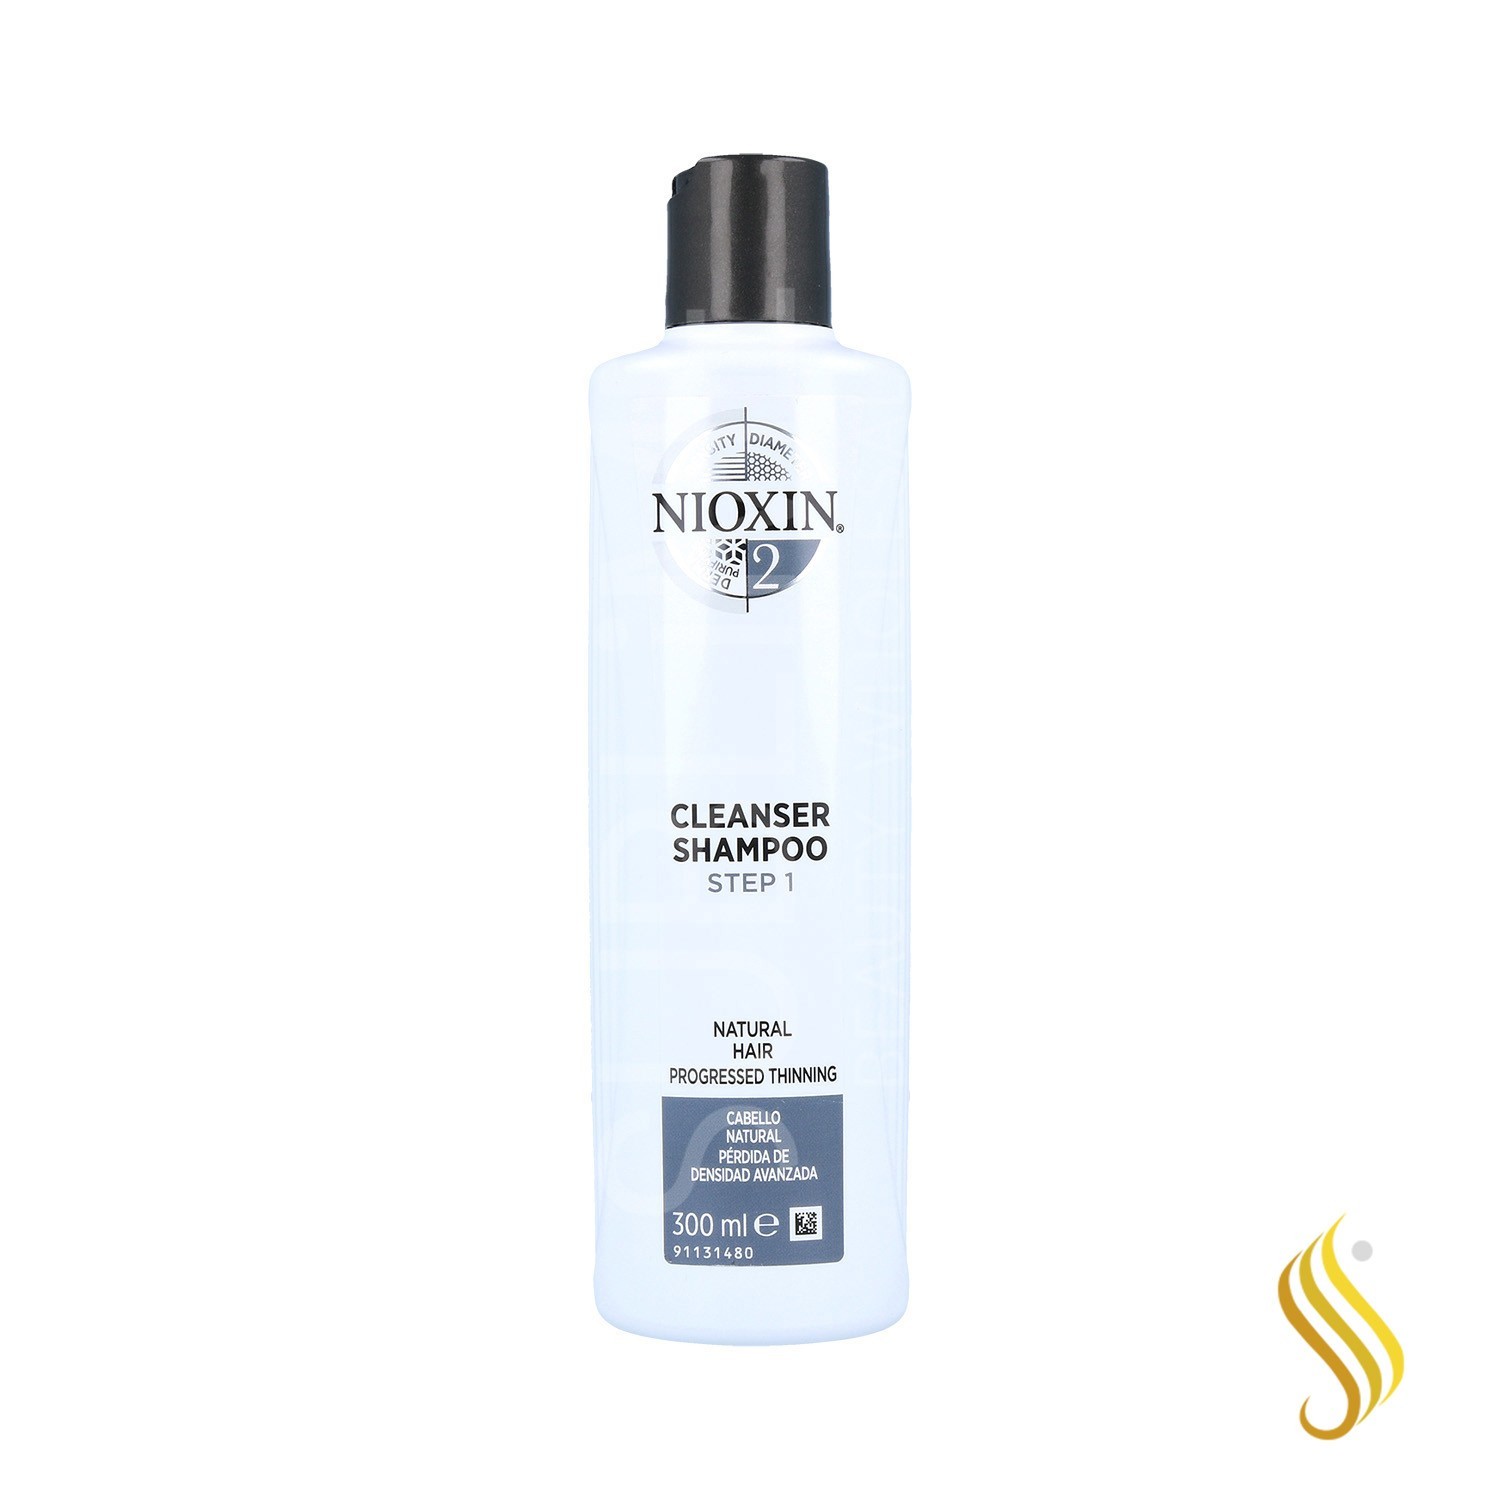 Nioxin Clean Sistema 2 Cabello Natural Avanzado Champú 300 ml